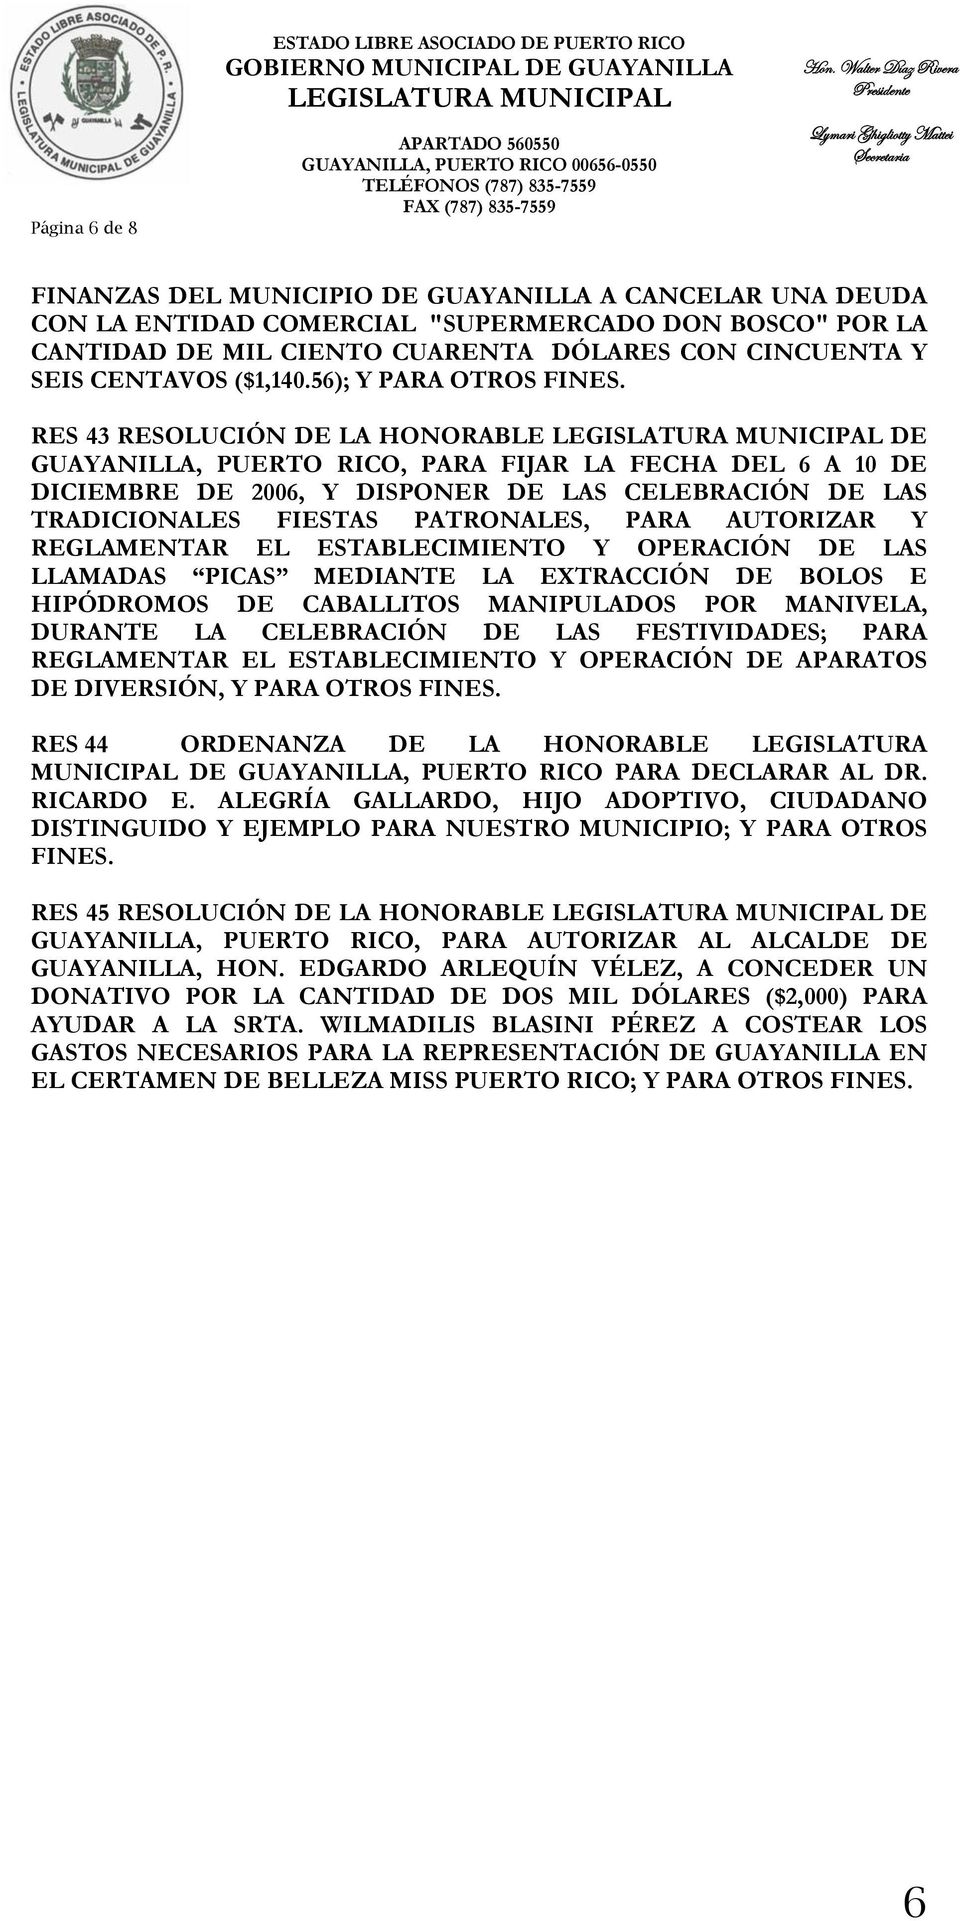 56); Y RES 43 RESOLUCIÓN DE LA HONORABLE DE GUAYANILLA, PUERTO RICO, PARA FIJAR LA FECHA DEL 6 A 10 DE DICIEMBRE DE 2006, Y DISPONER DE LAS CELEBRACIÓN DE LAS TRADICIONALES FIESTAS PATRONALES, PARA